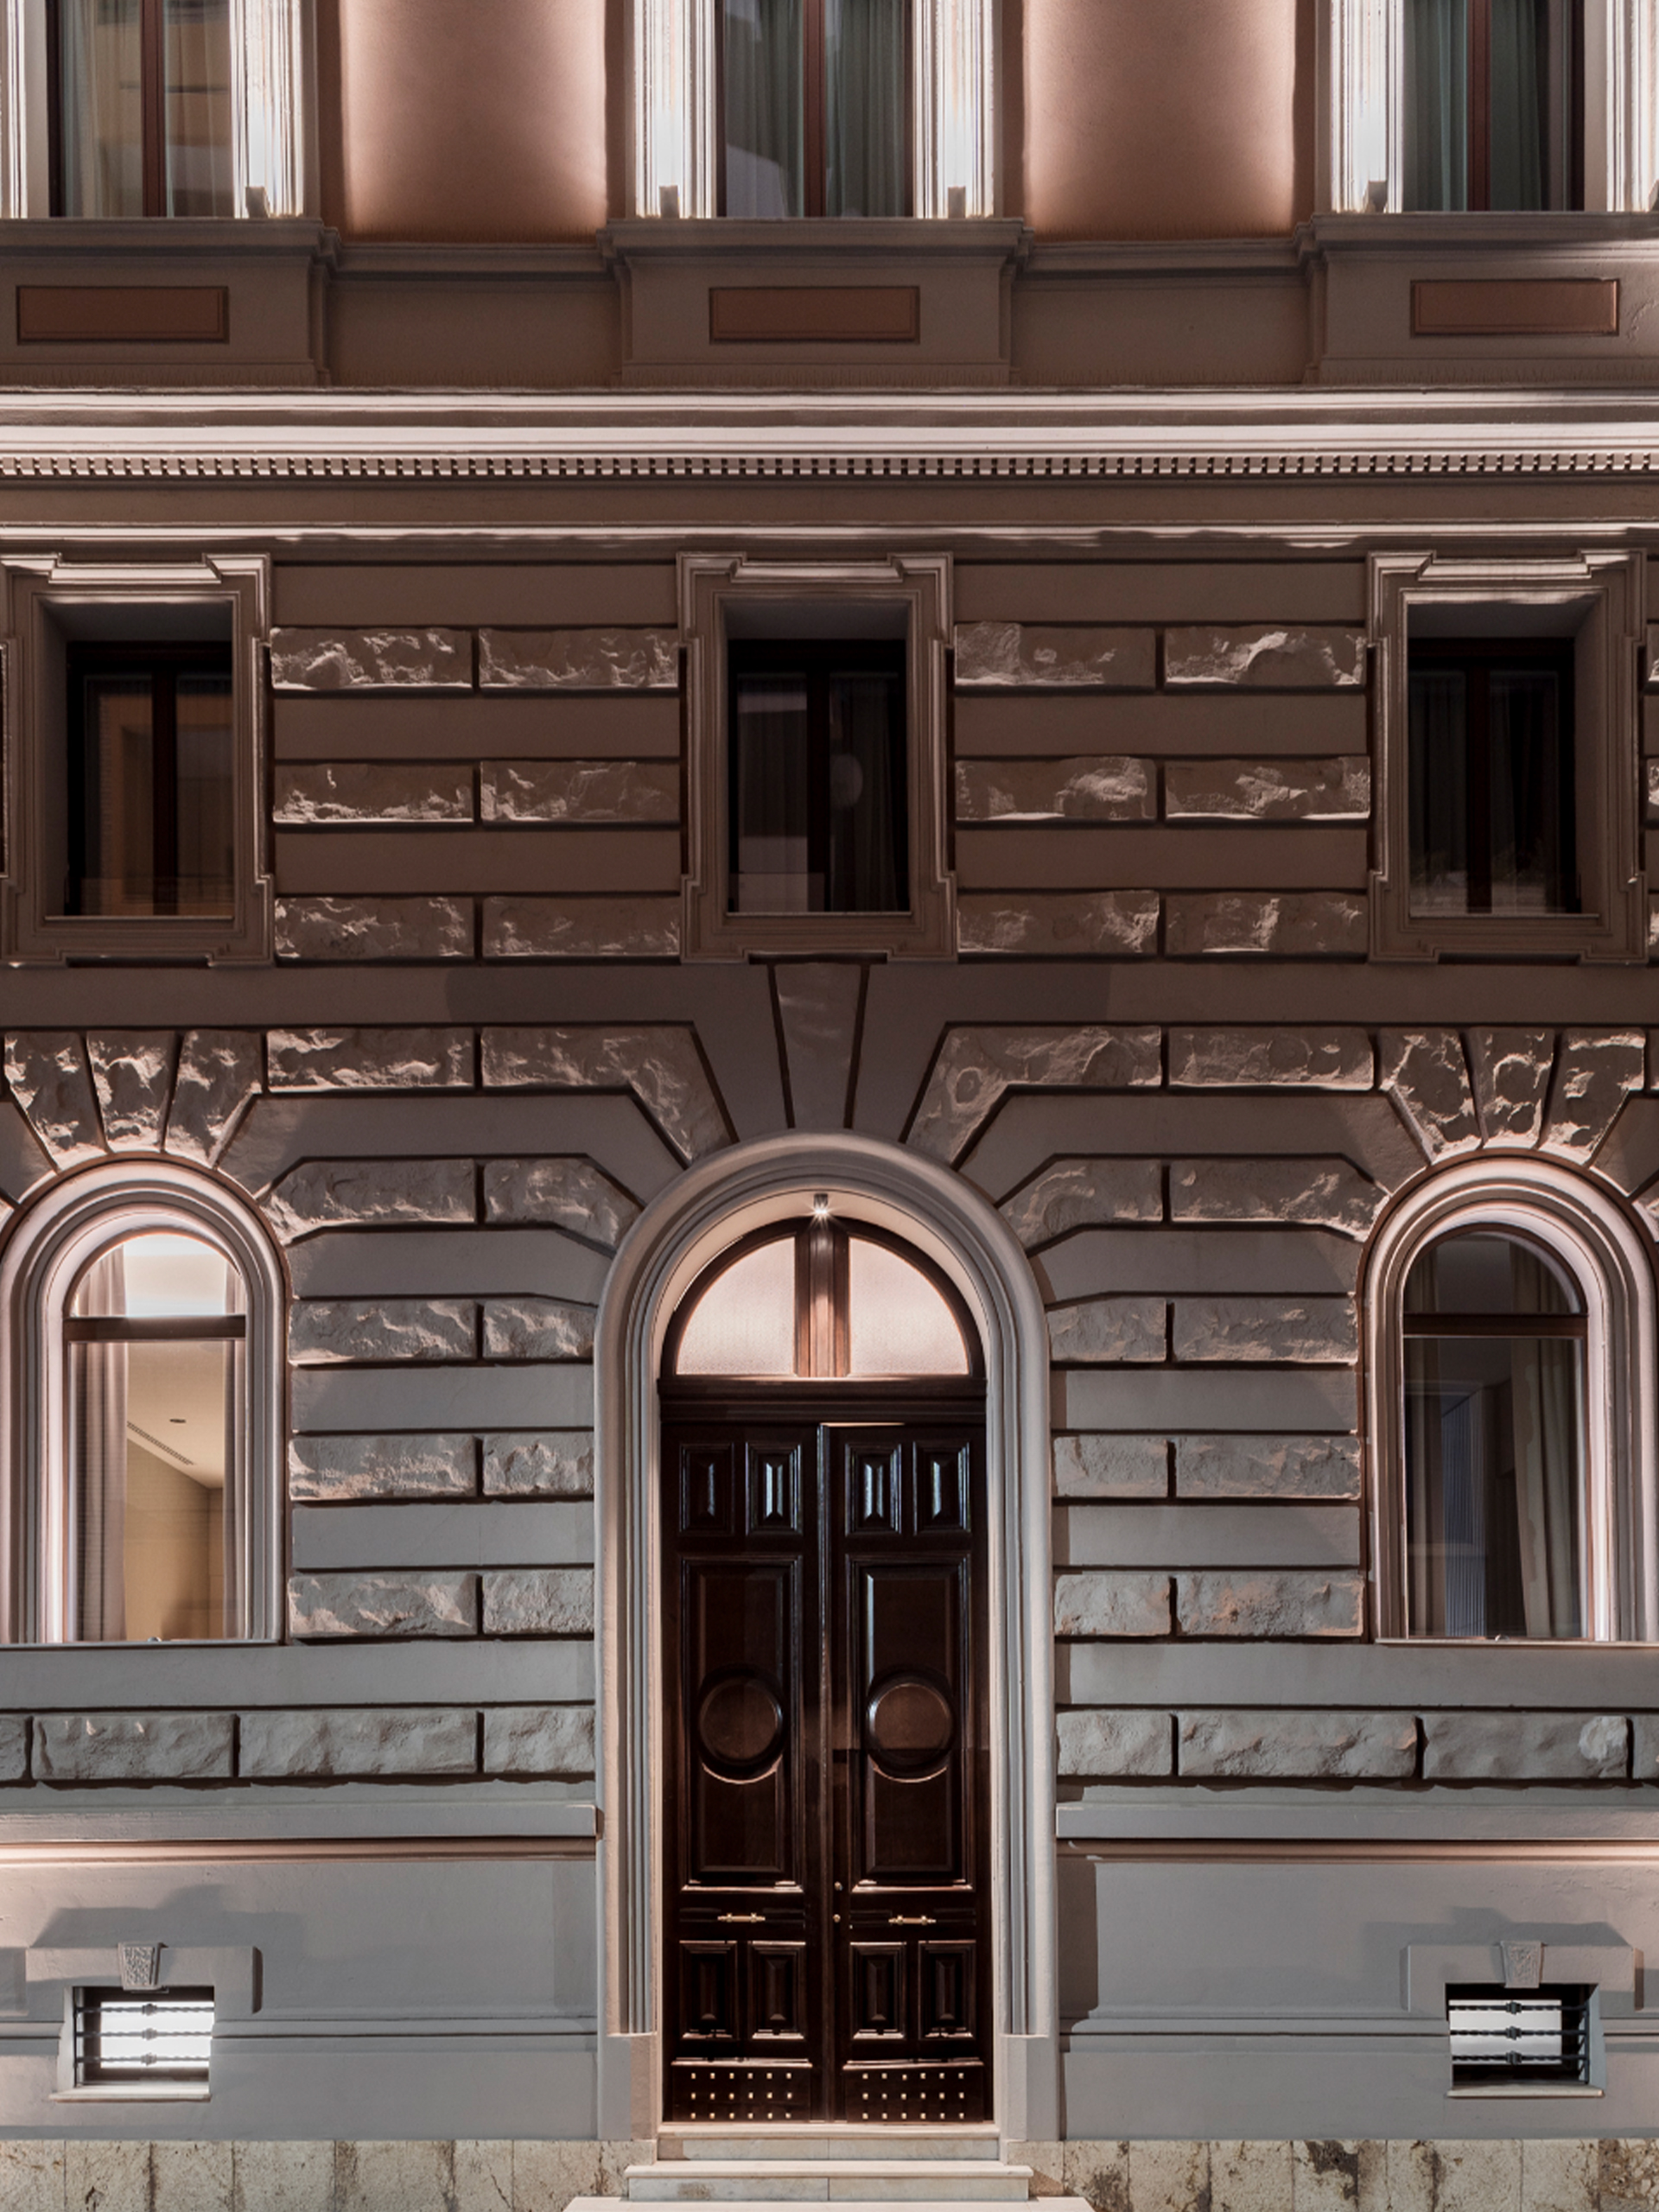 3. Dettagli della facciata di Palazzo Tirso Cagliari – MGallery Hotel Collection 5* - ph. © Studio Vetroblu